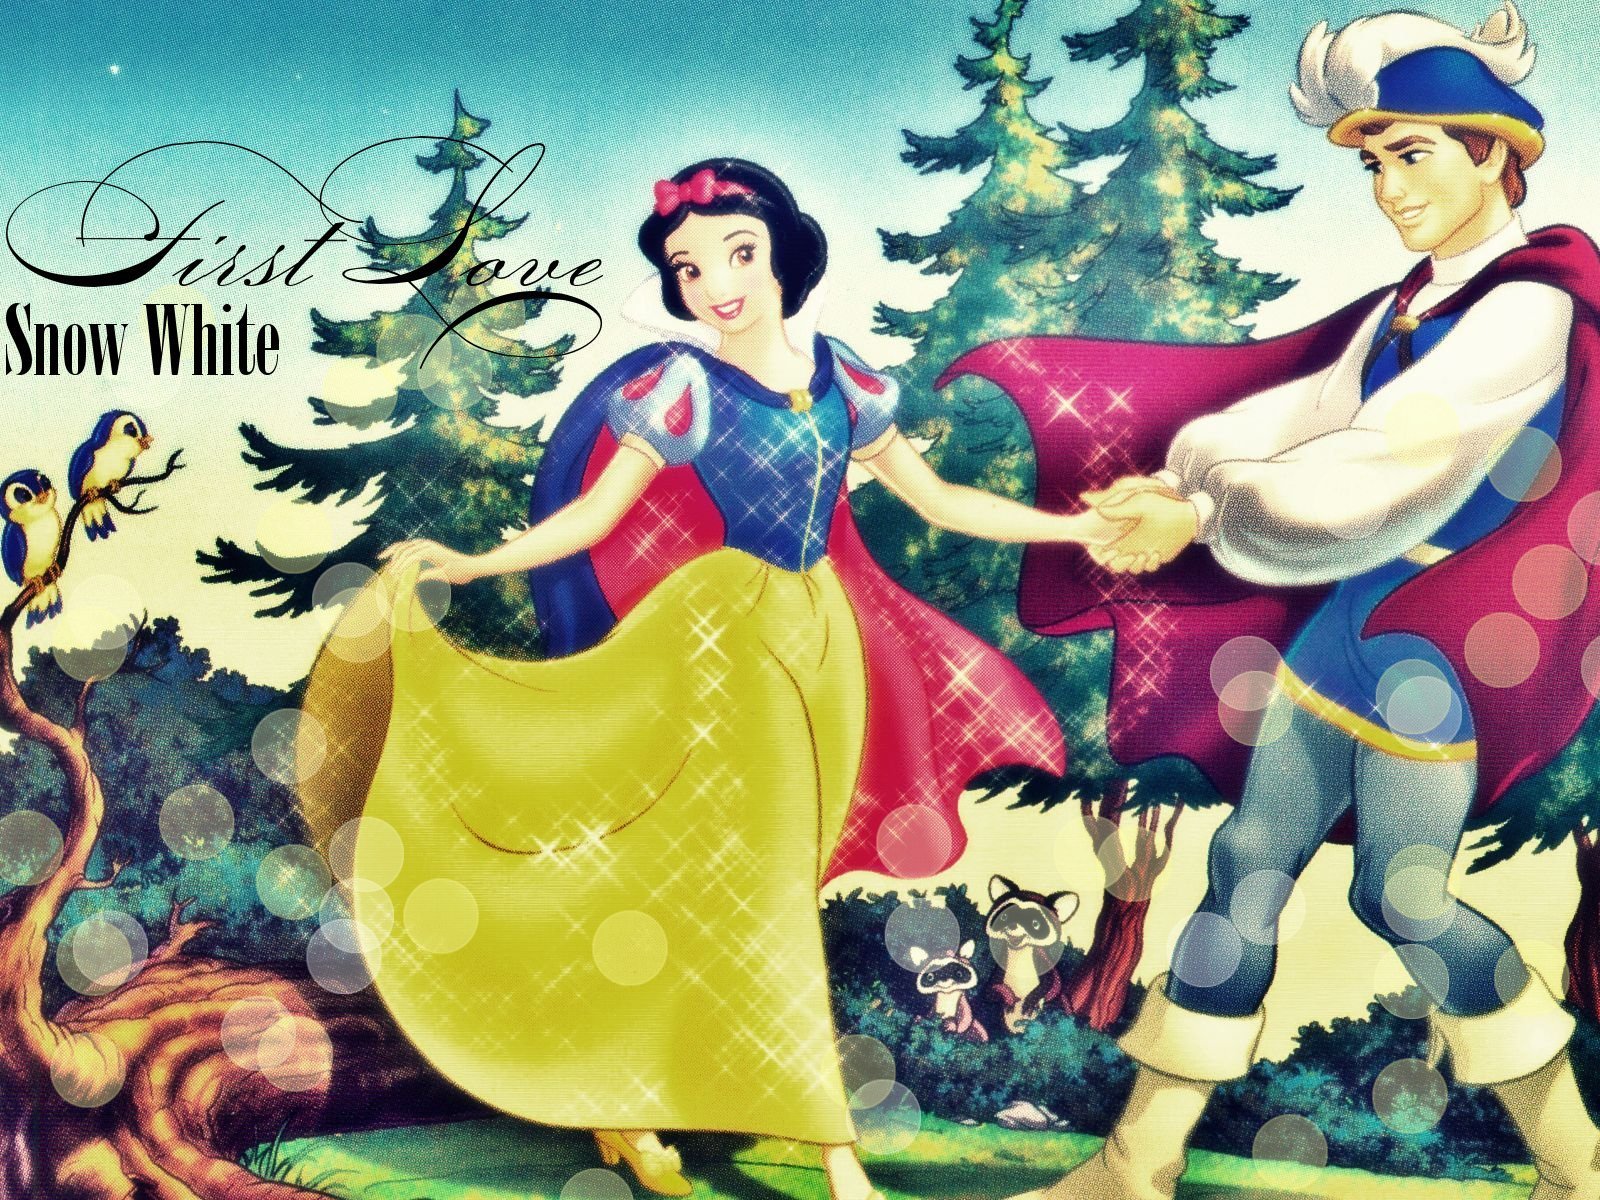 http://images2.fanpop.com/image/photos/11000000/Disney-Princess-Snow-White-disney-princess-11055077-1600-1200.jpg